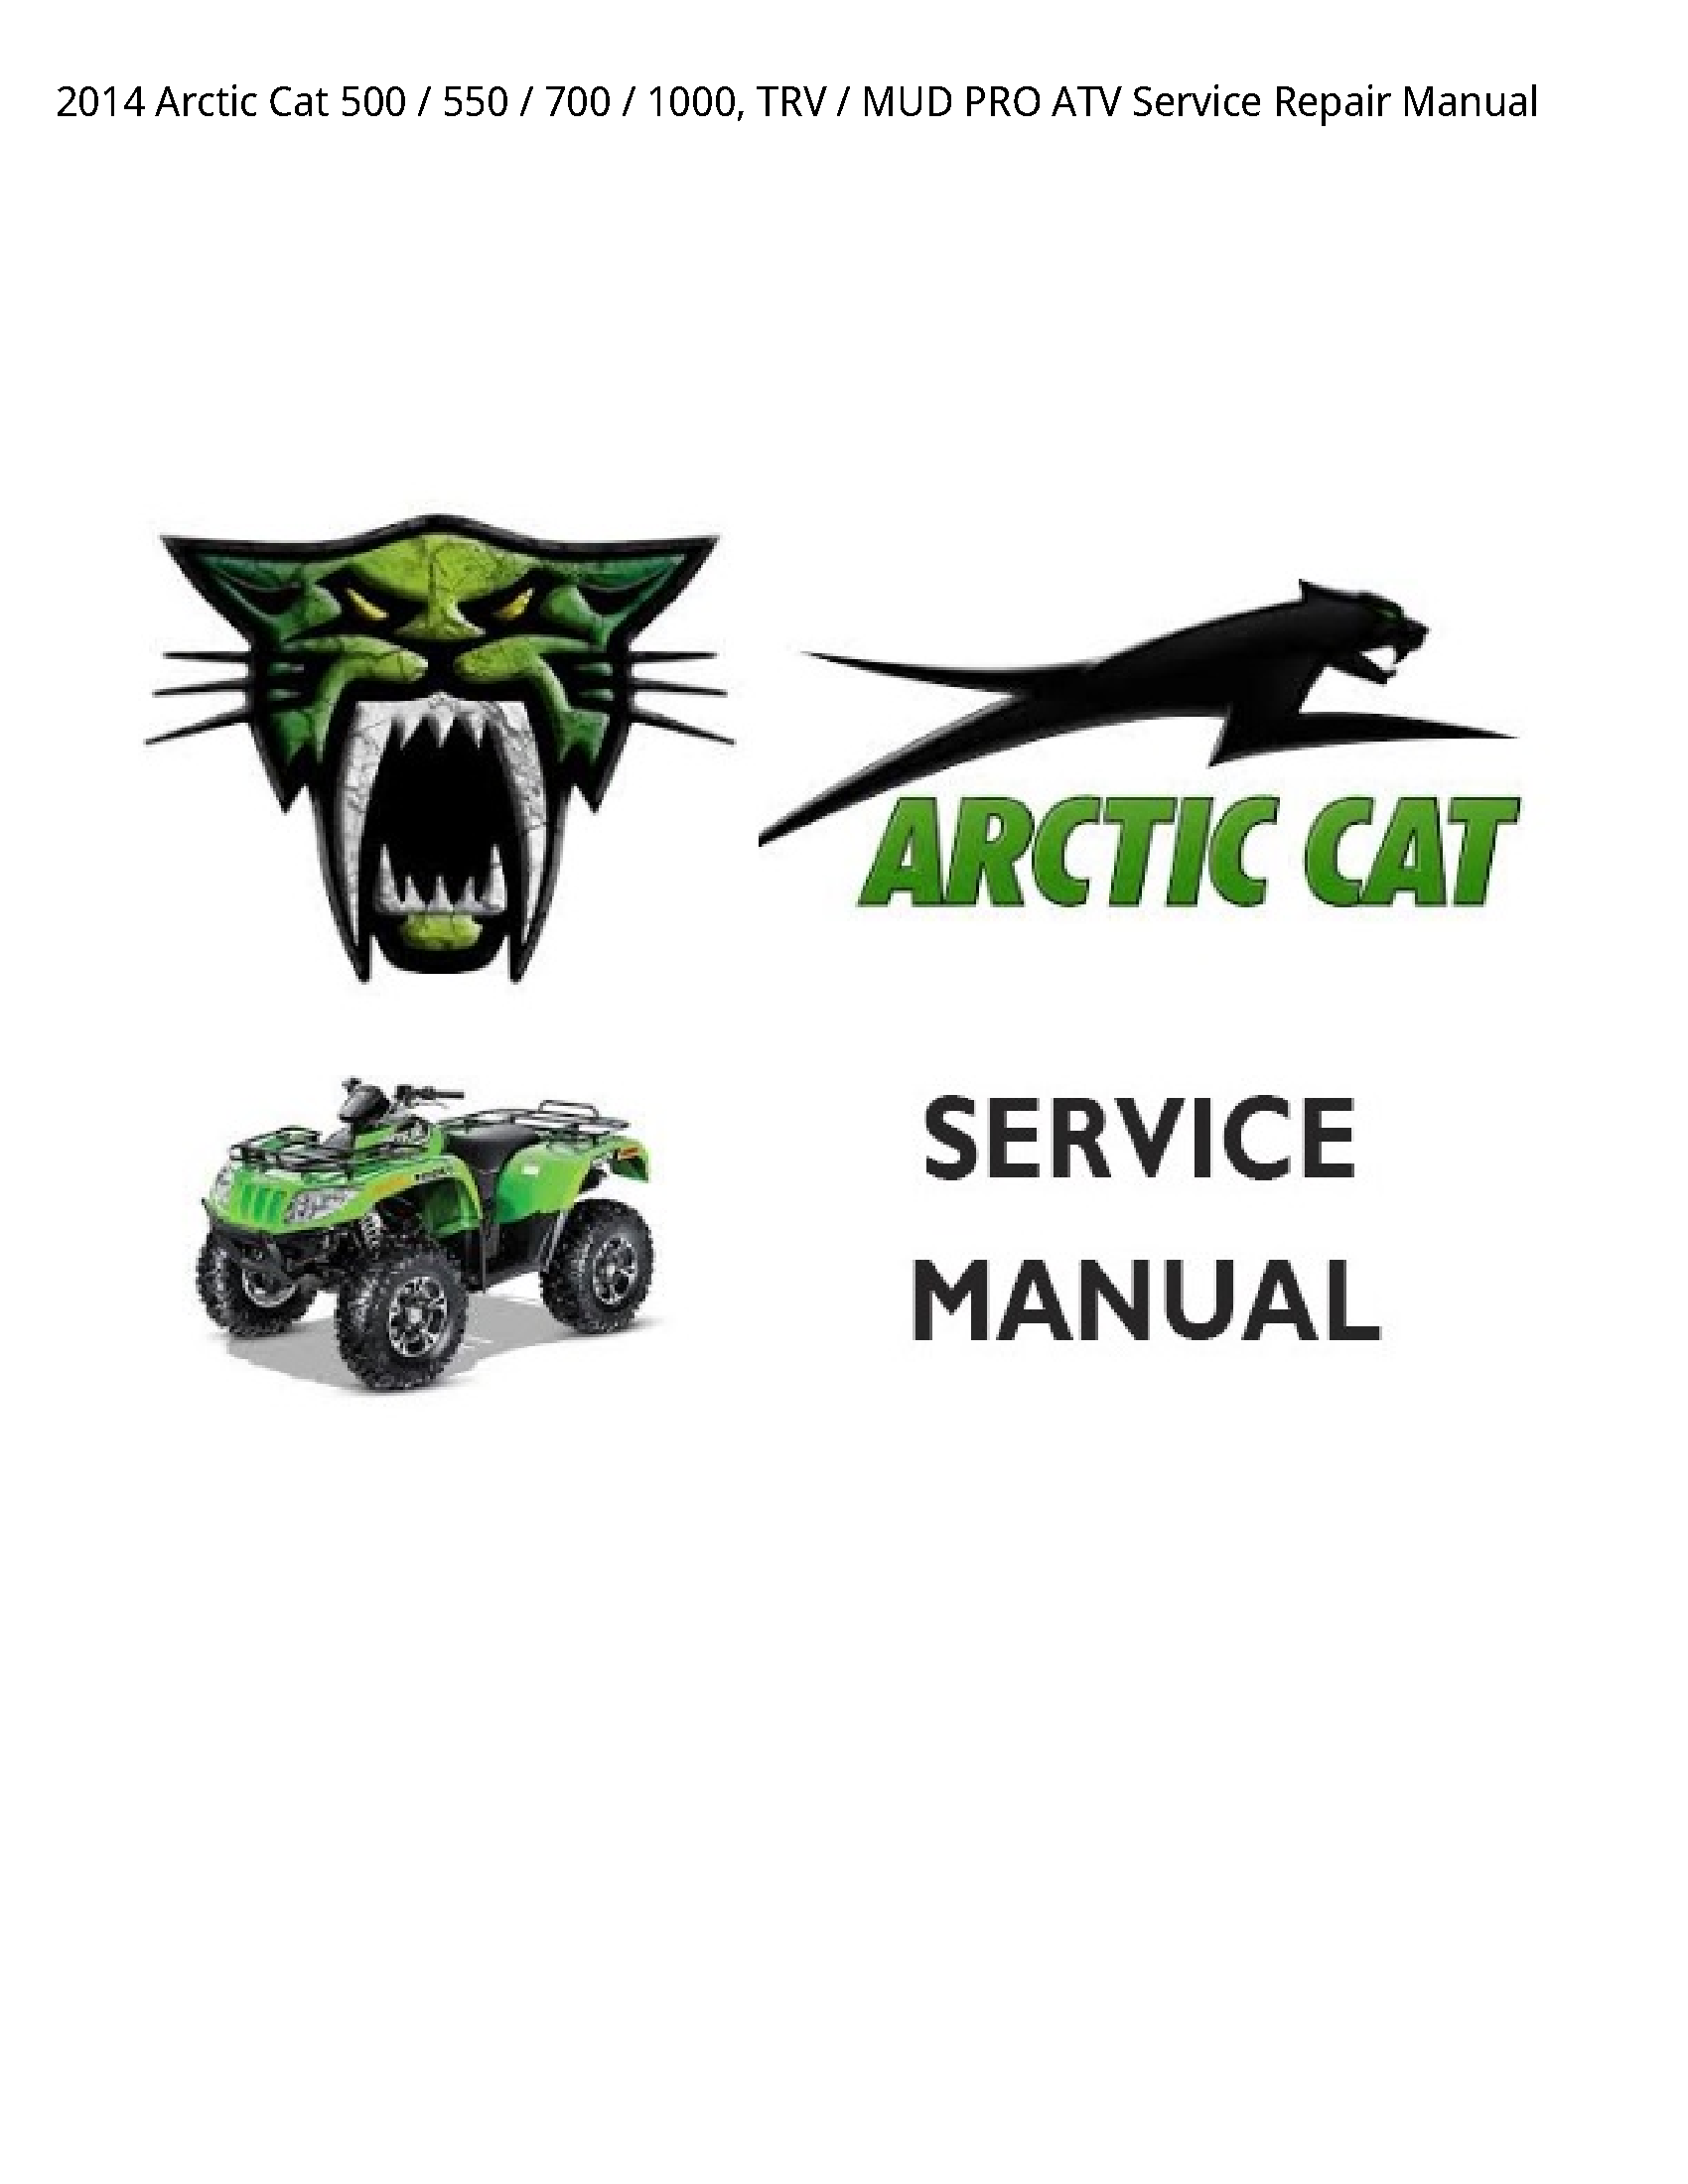 Arctic Cat 500 TRV MUD PRO ATV manual